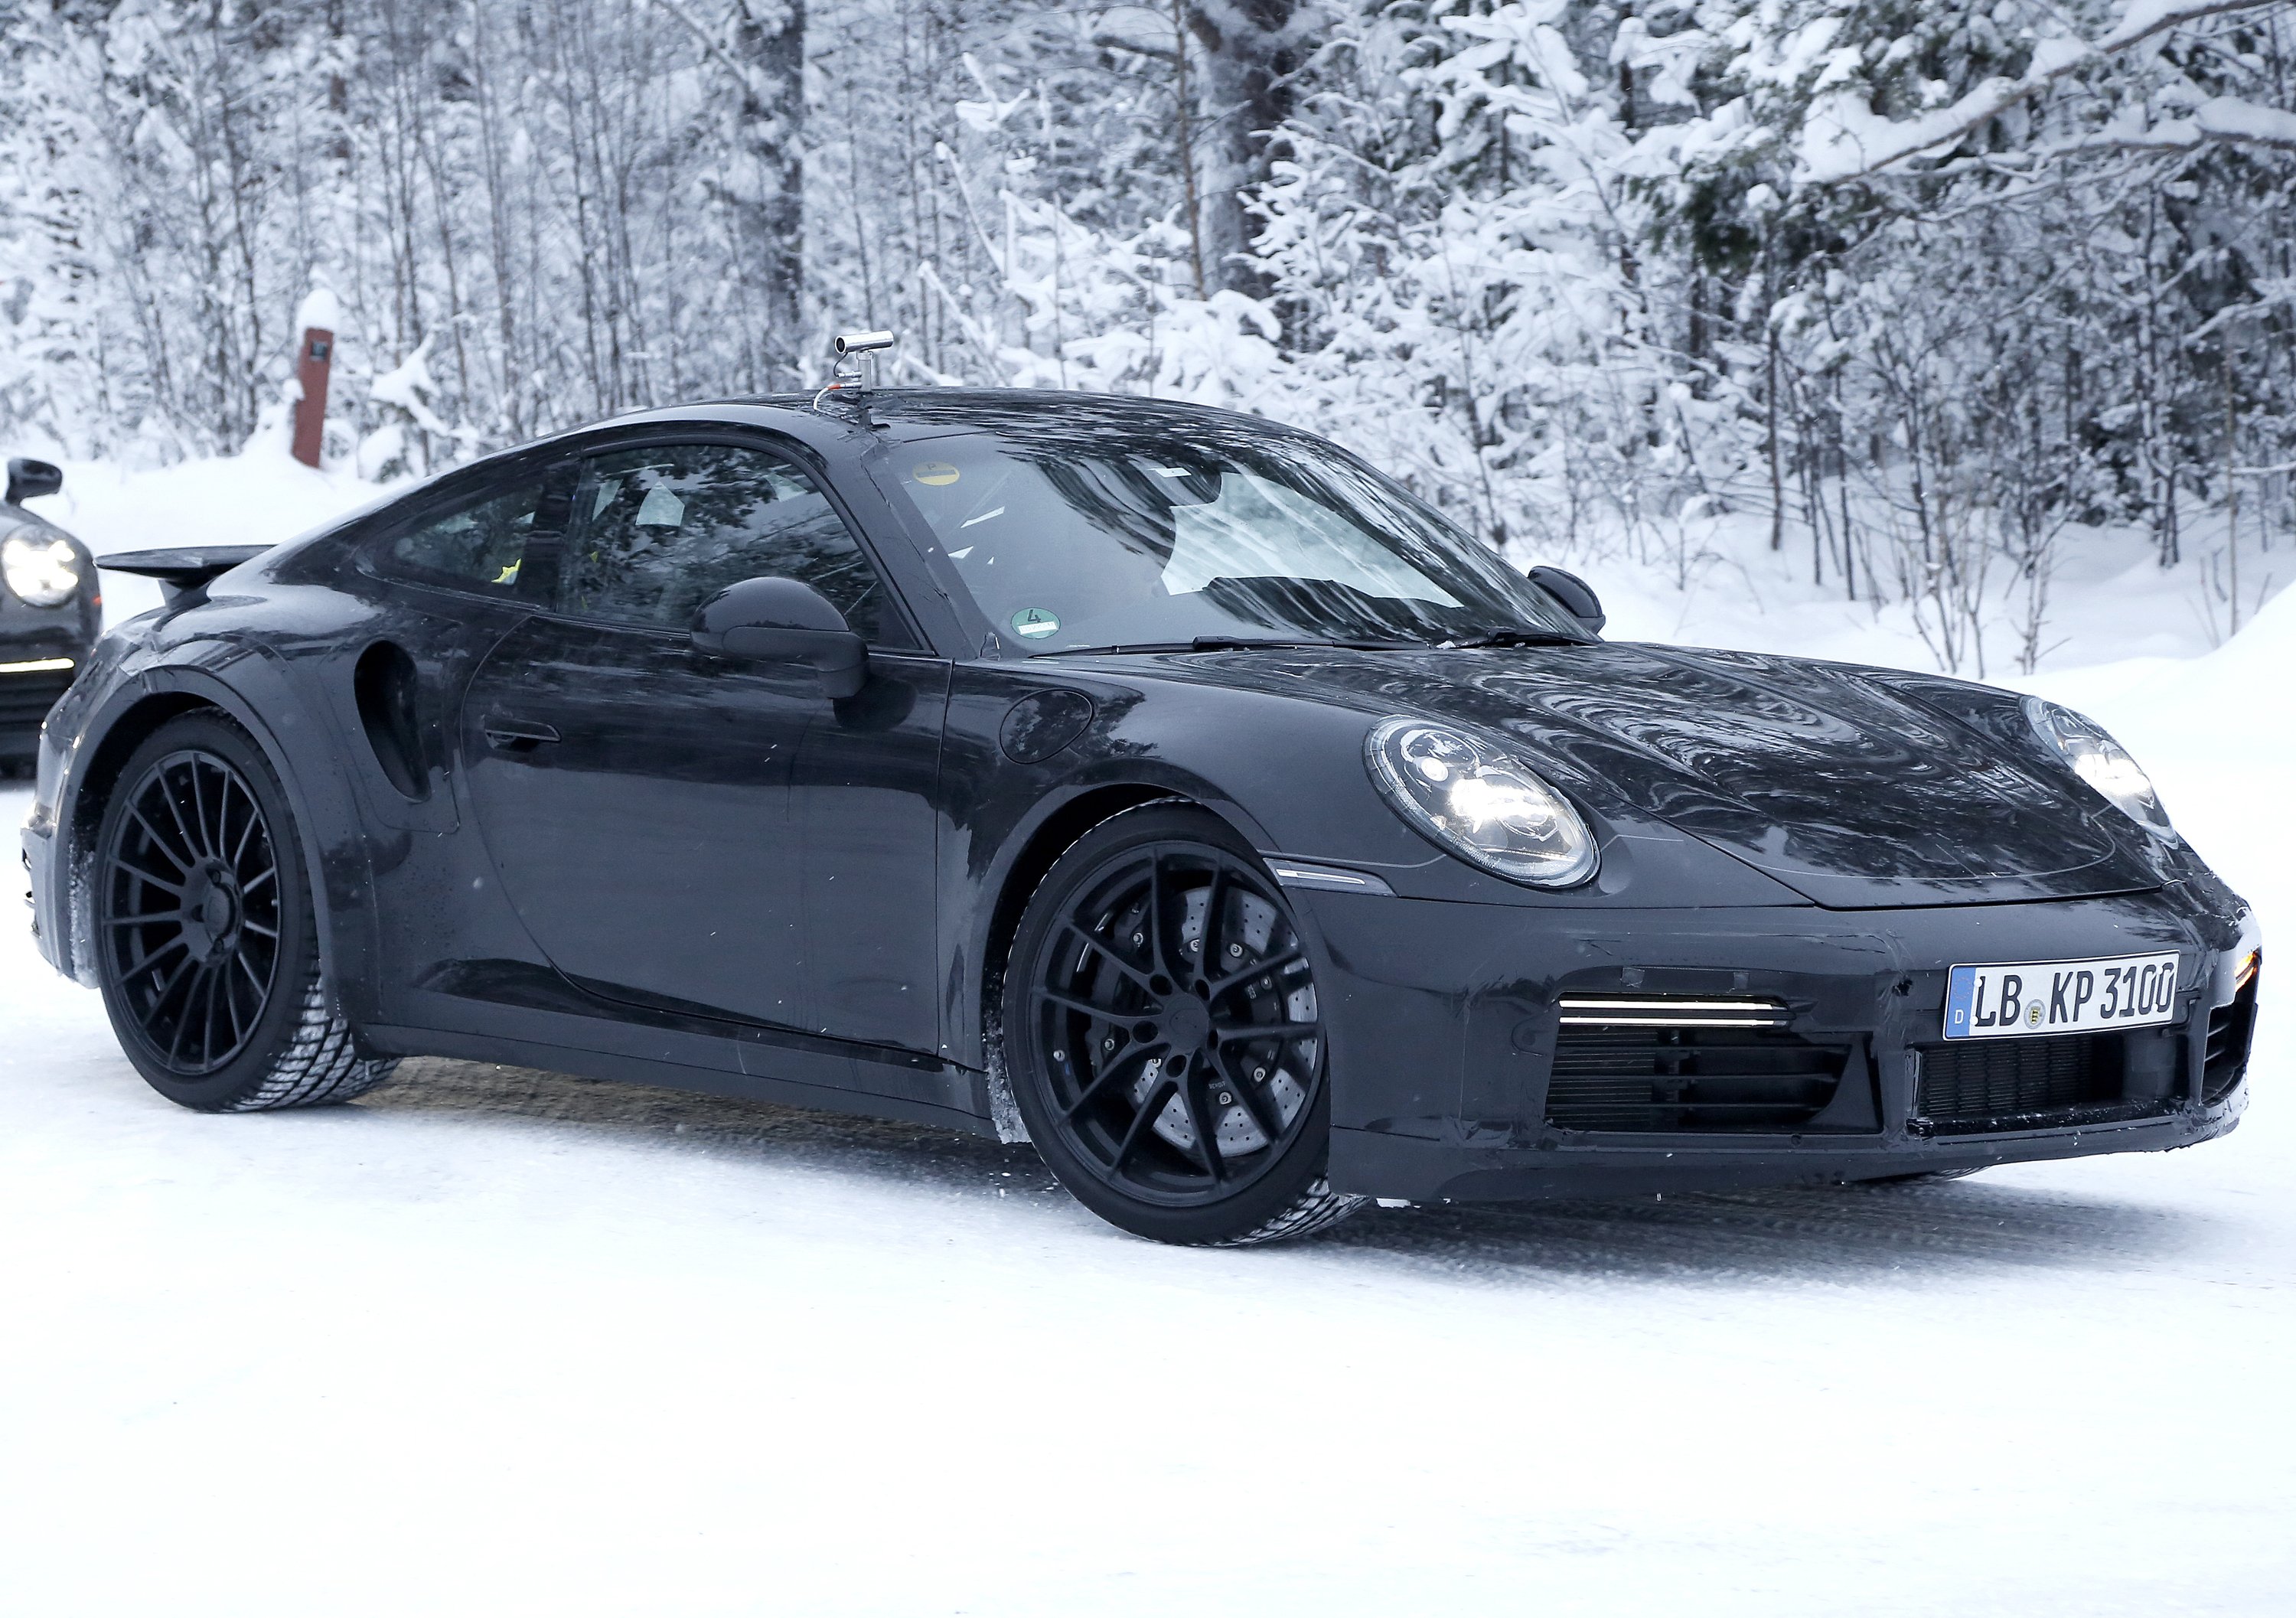 Porsche 911 Turbo 2019 in test sulla neve